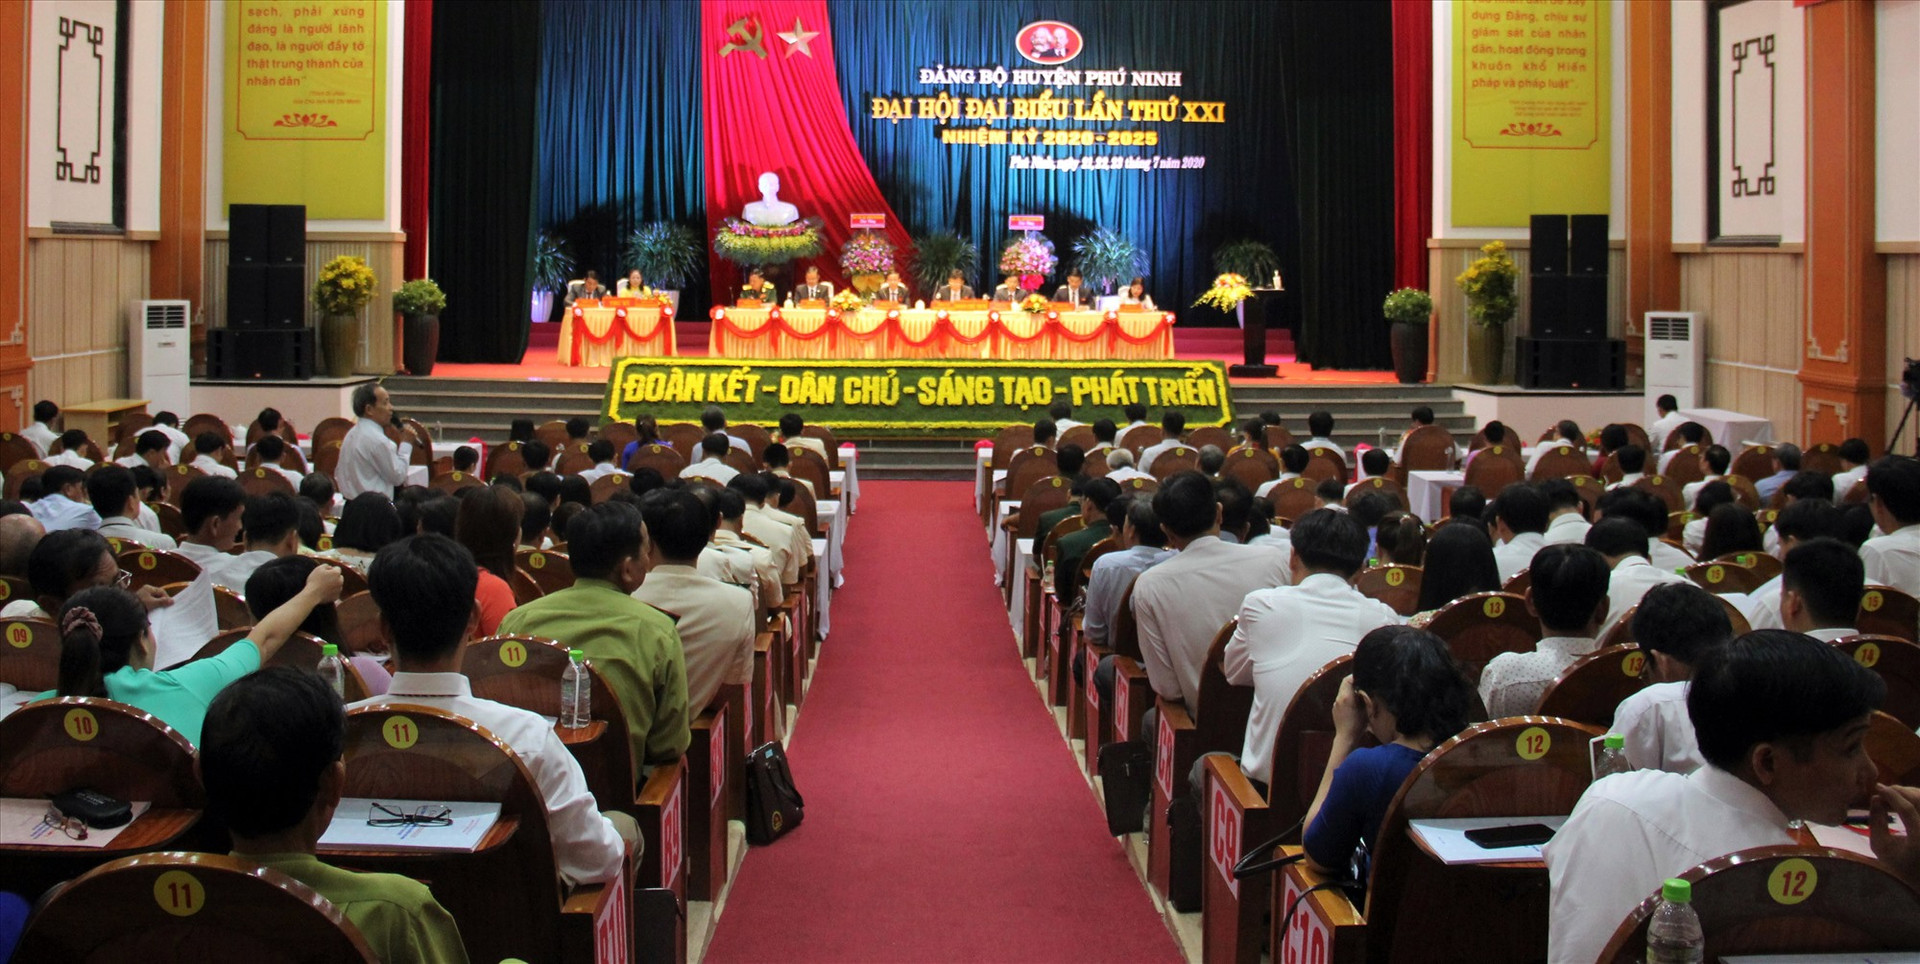 Điểm sáng trong công tác xây dựng Đảng của Phú Ninh năm 2020 là lãnh đạo, chỉ đạo tổ chức thành công đại hội đảng các cấp và Đại hội Đảng bộ huyện lần thứ XXI (nhiệm kỳ 2020 - 2025). Ảnh: VINH ANH